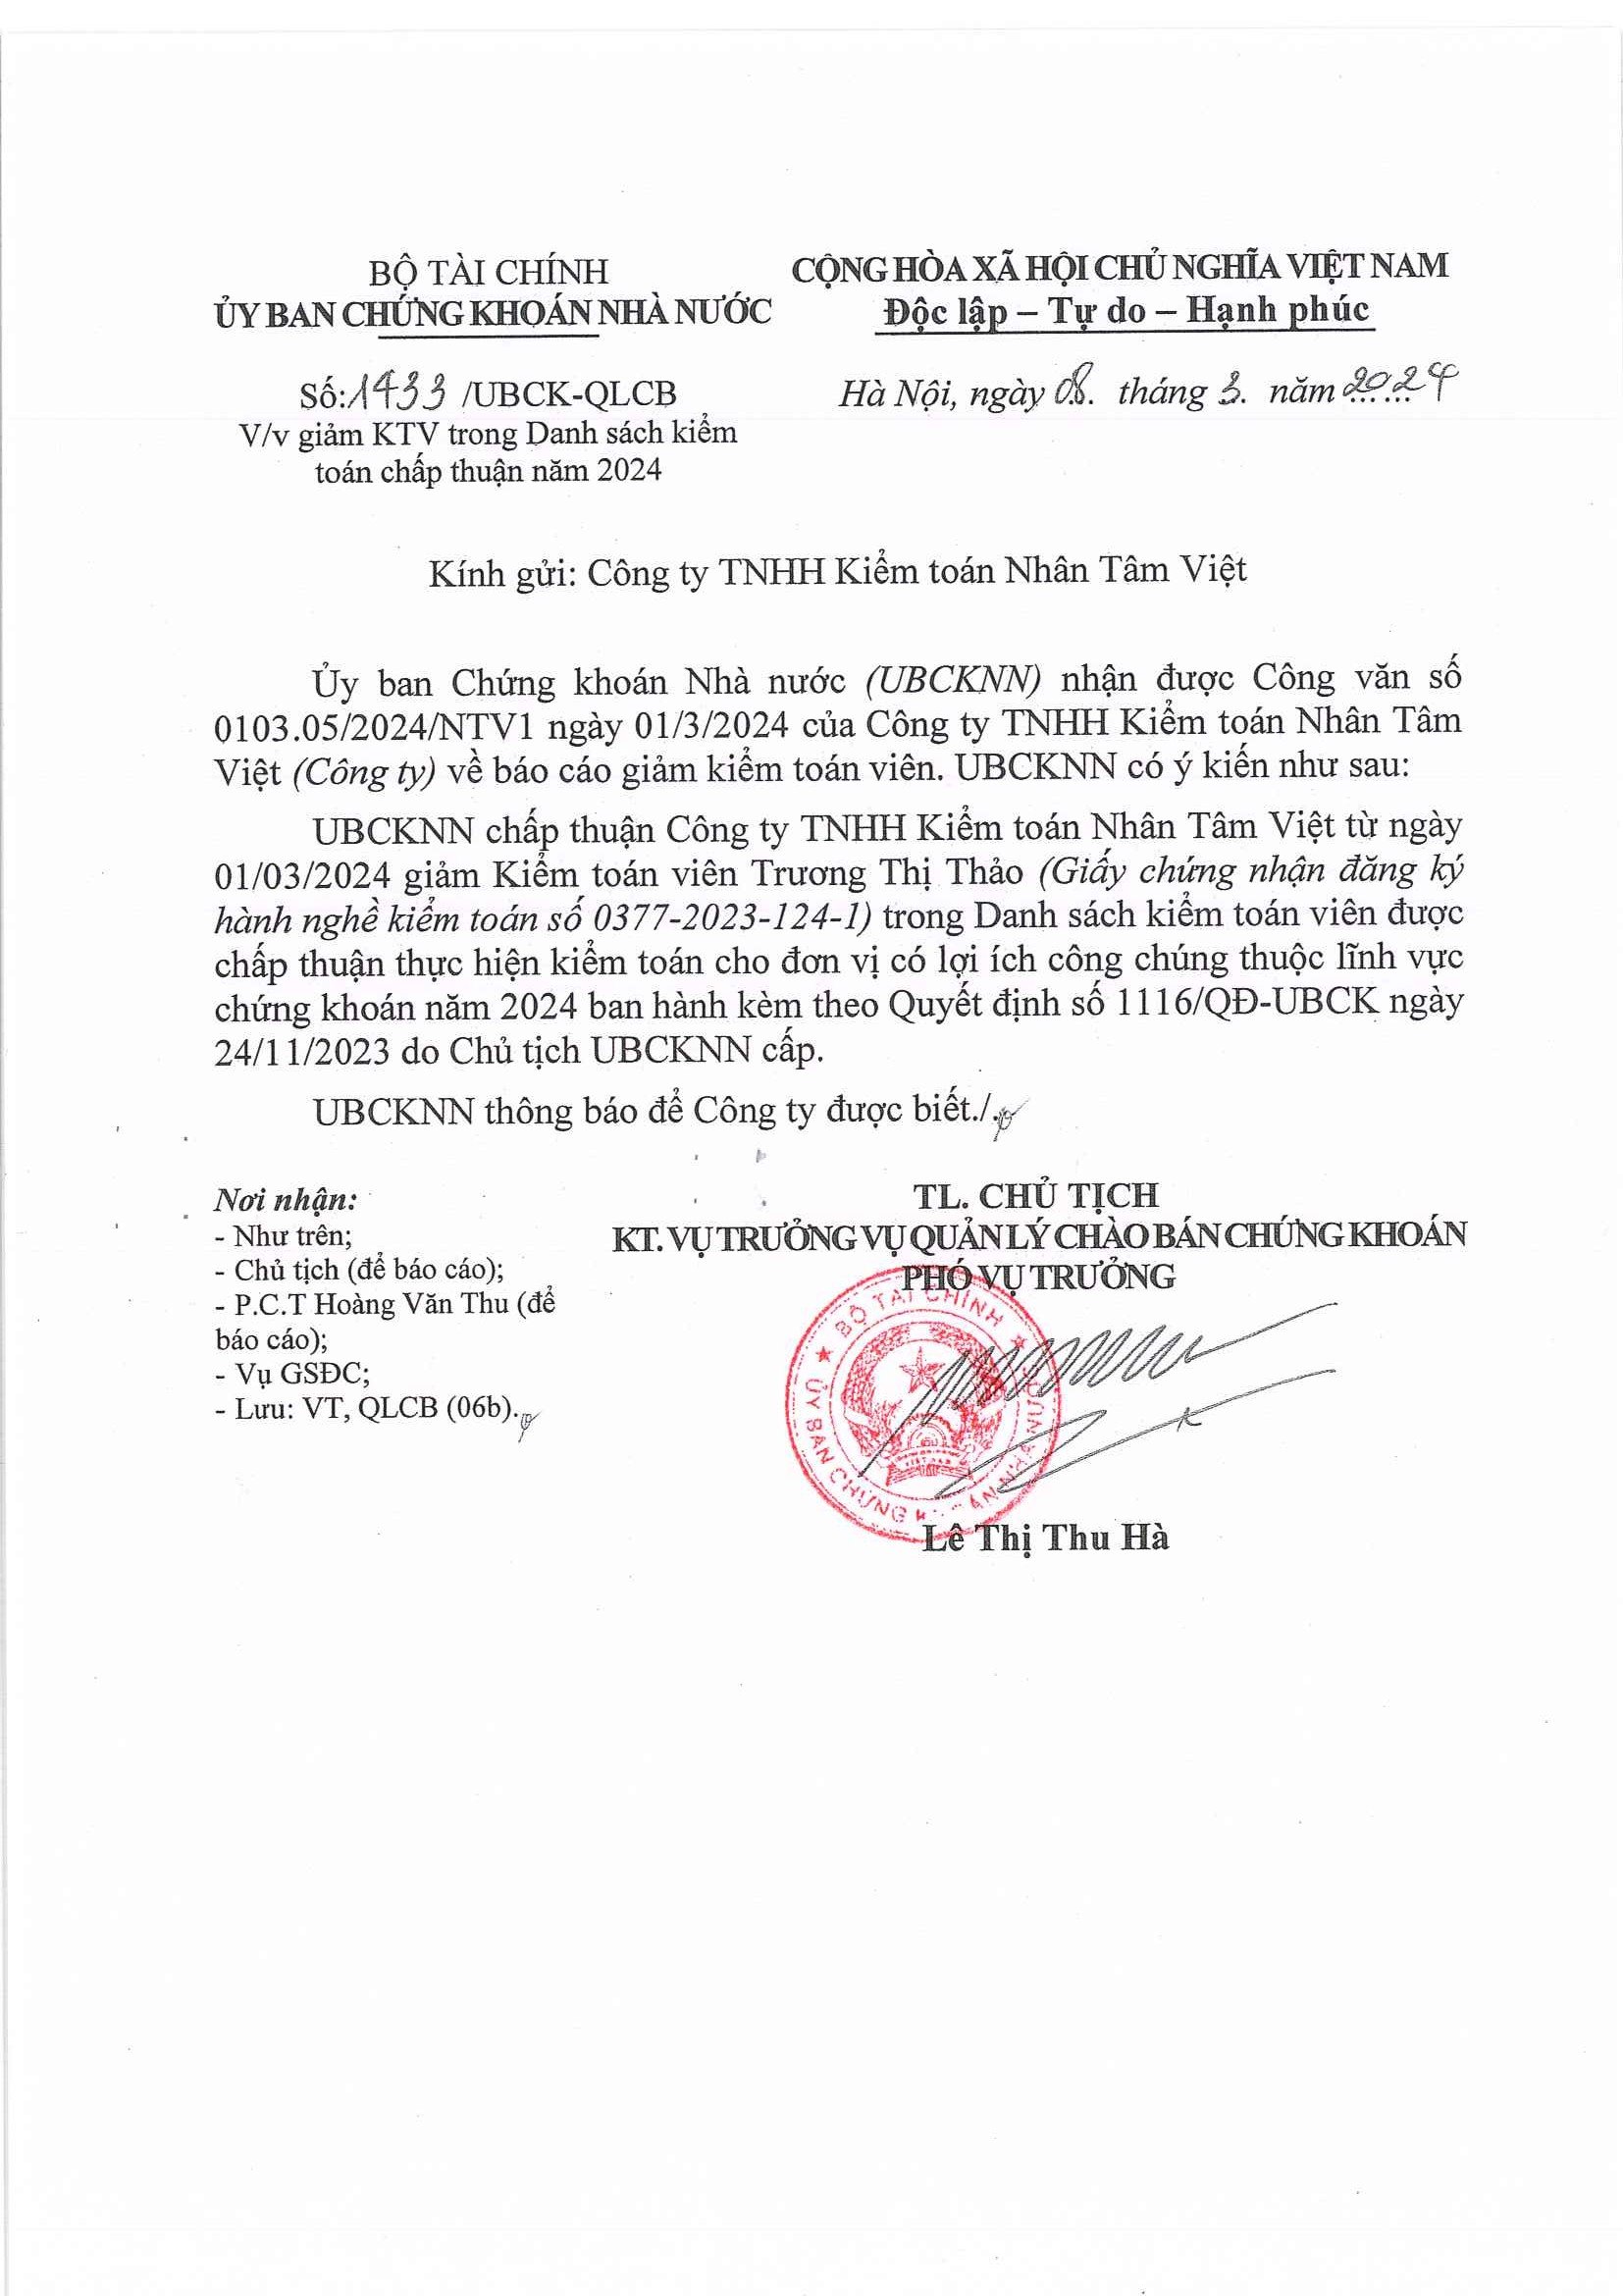 Cập nhật thông tin Báo cáo minh bạch tháng 3/2024 (Thông Báo Giảm kiểm toán viên Trương Thị Thảo trong danh sách Kiểm toán viên ��ược kiểm toán cho các đơn vị có LICC năm 2024)